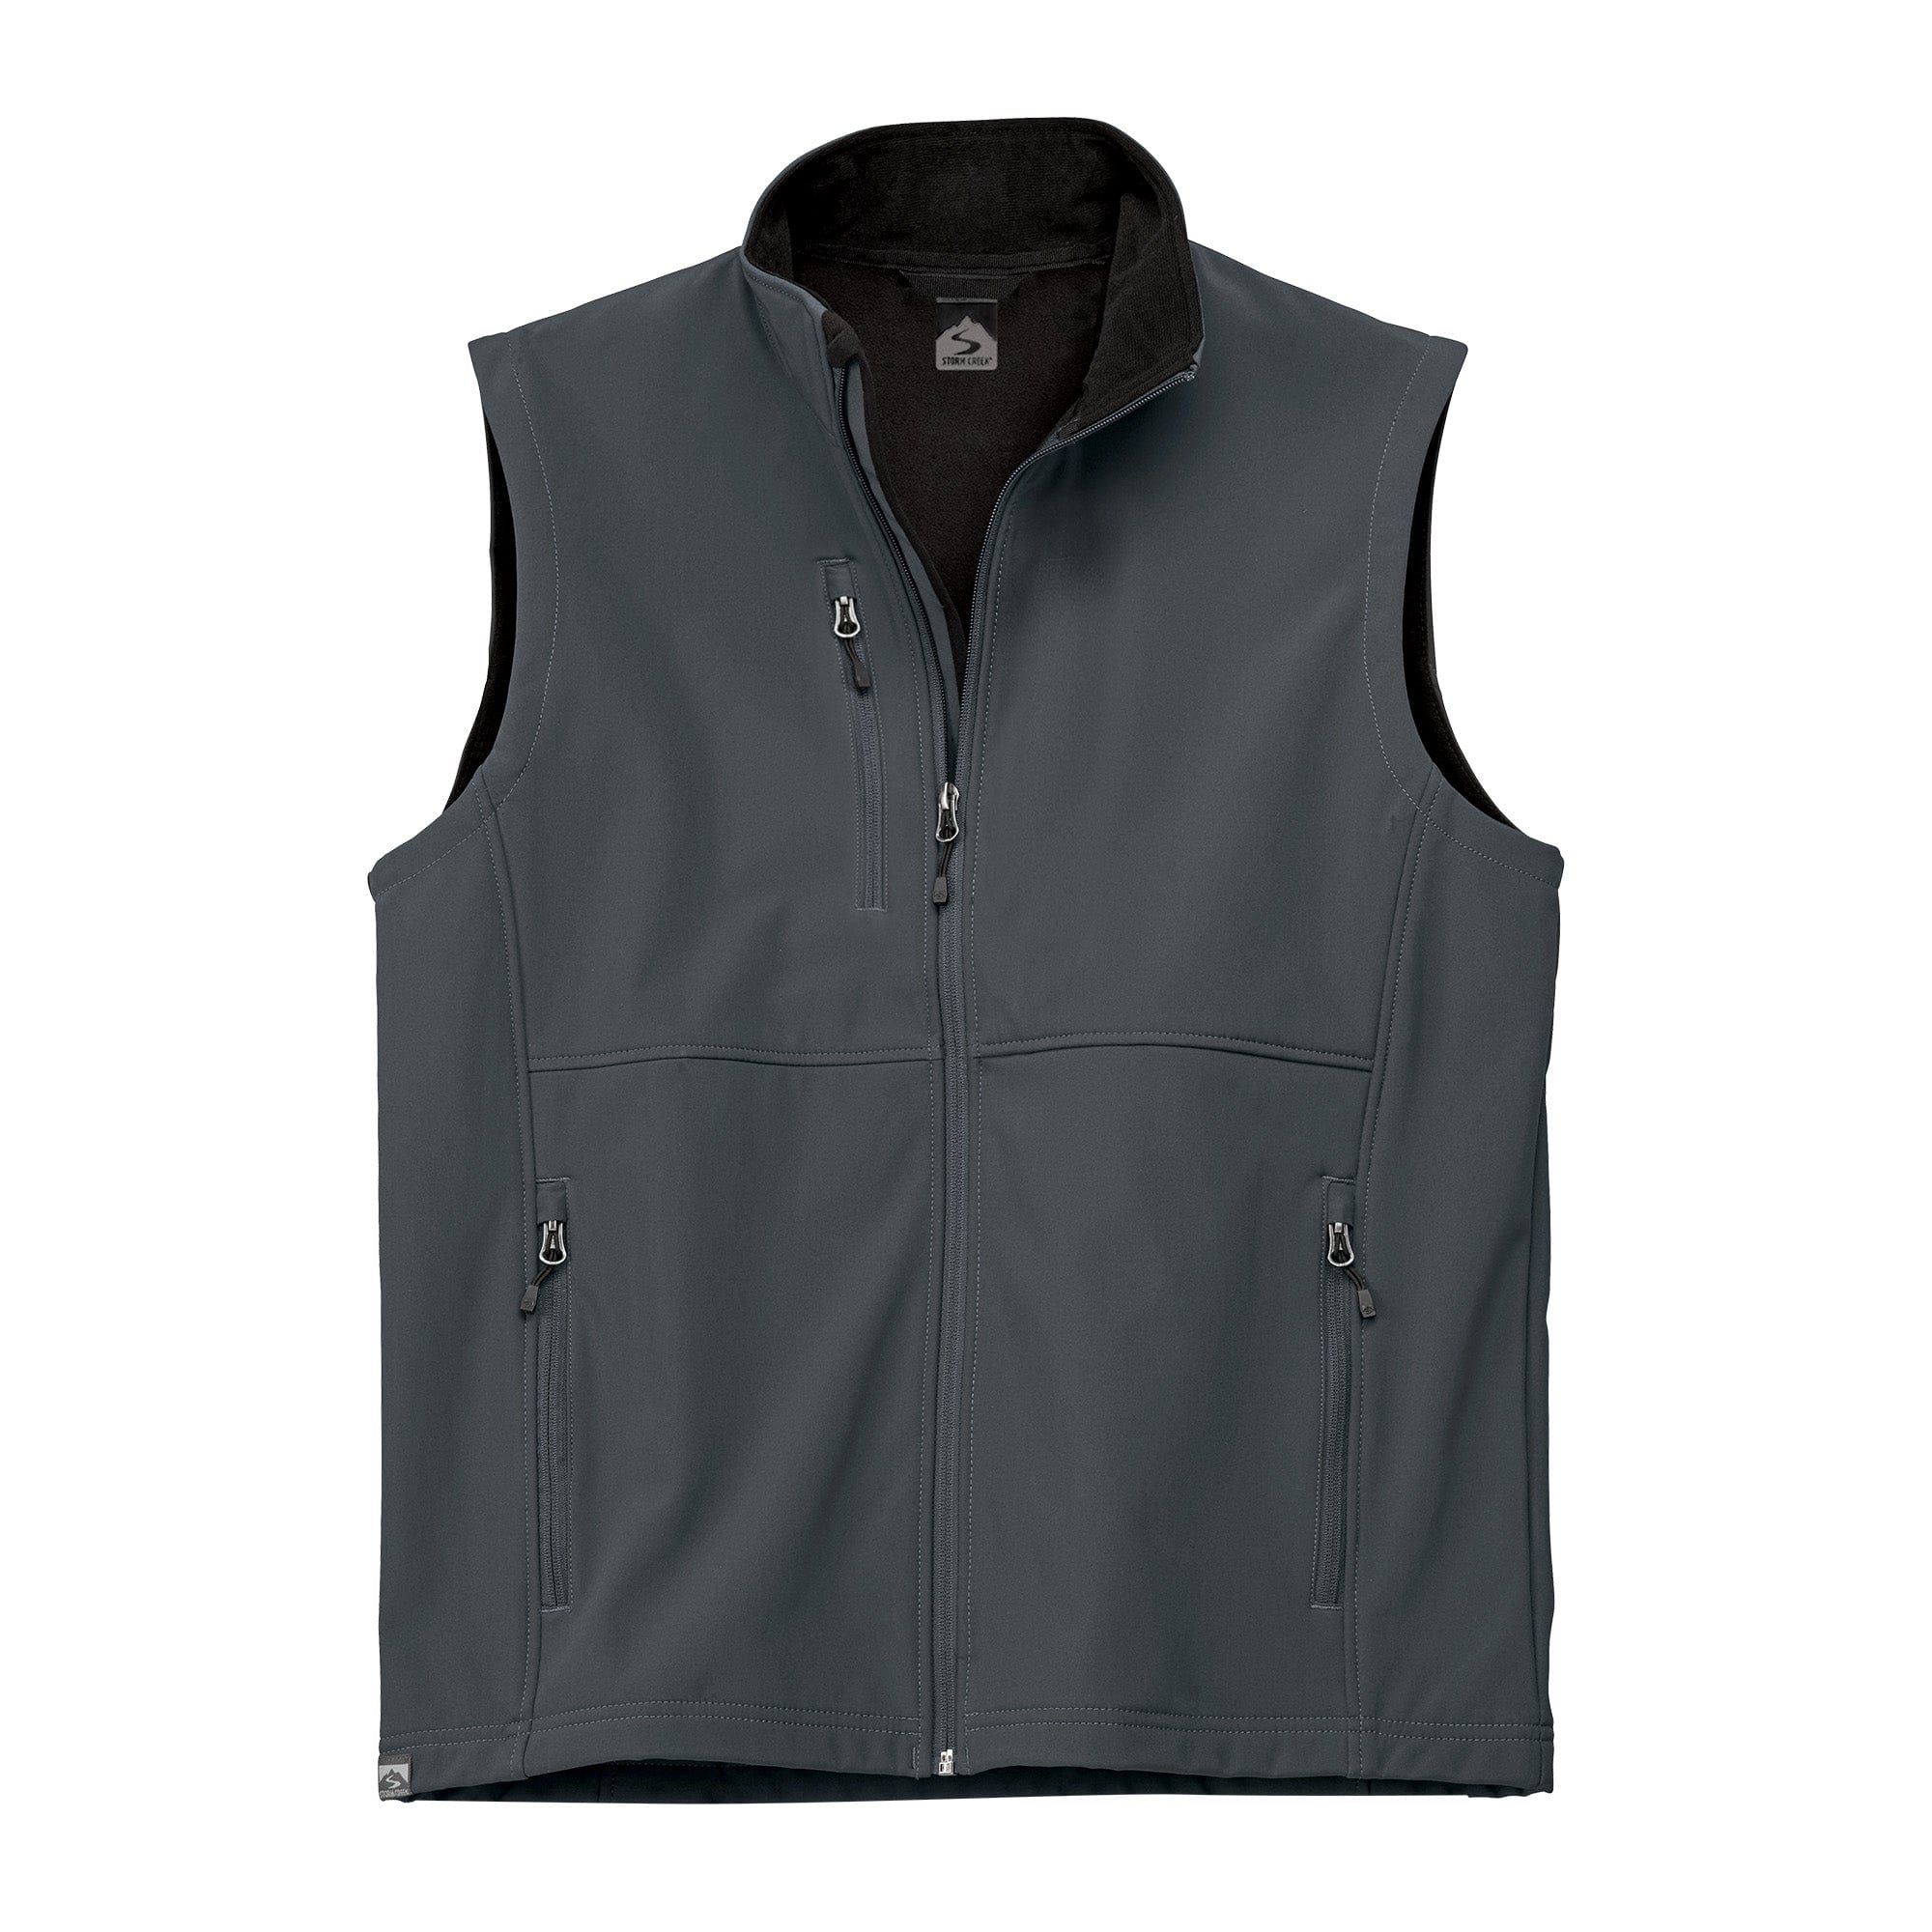 Customizable Storm Creek® Men's Trailblazer Vest in jet black.